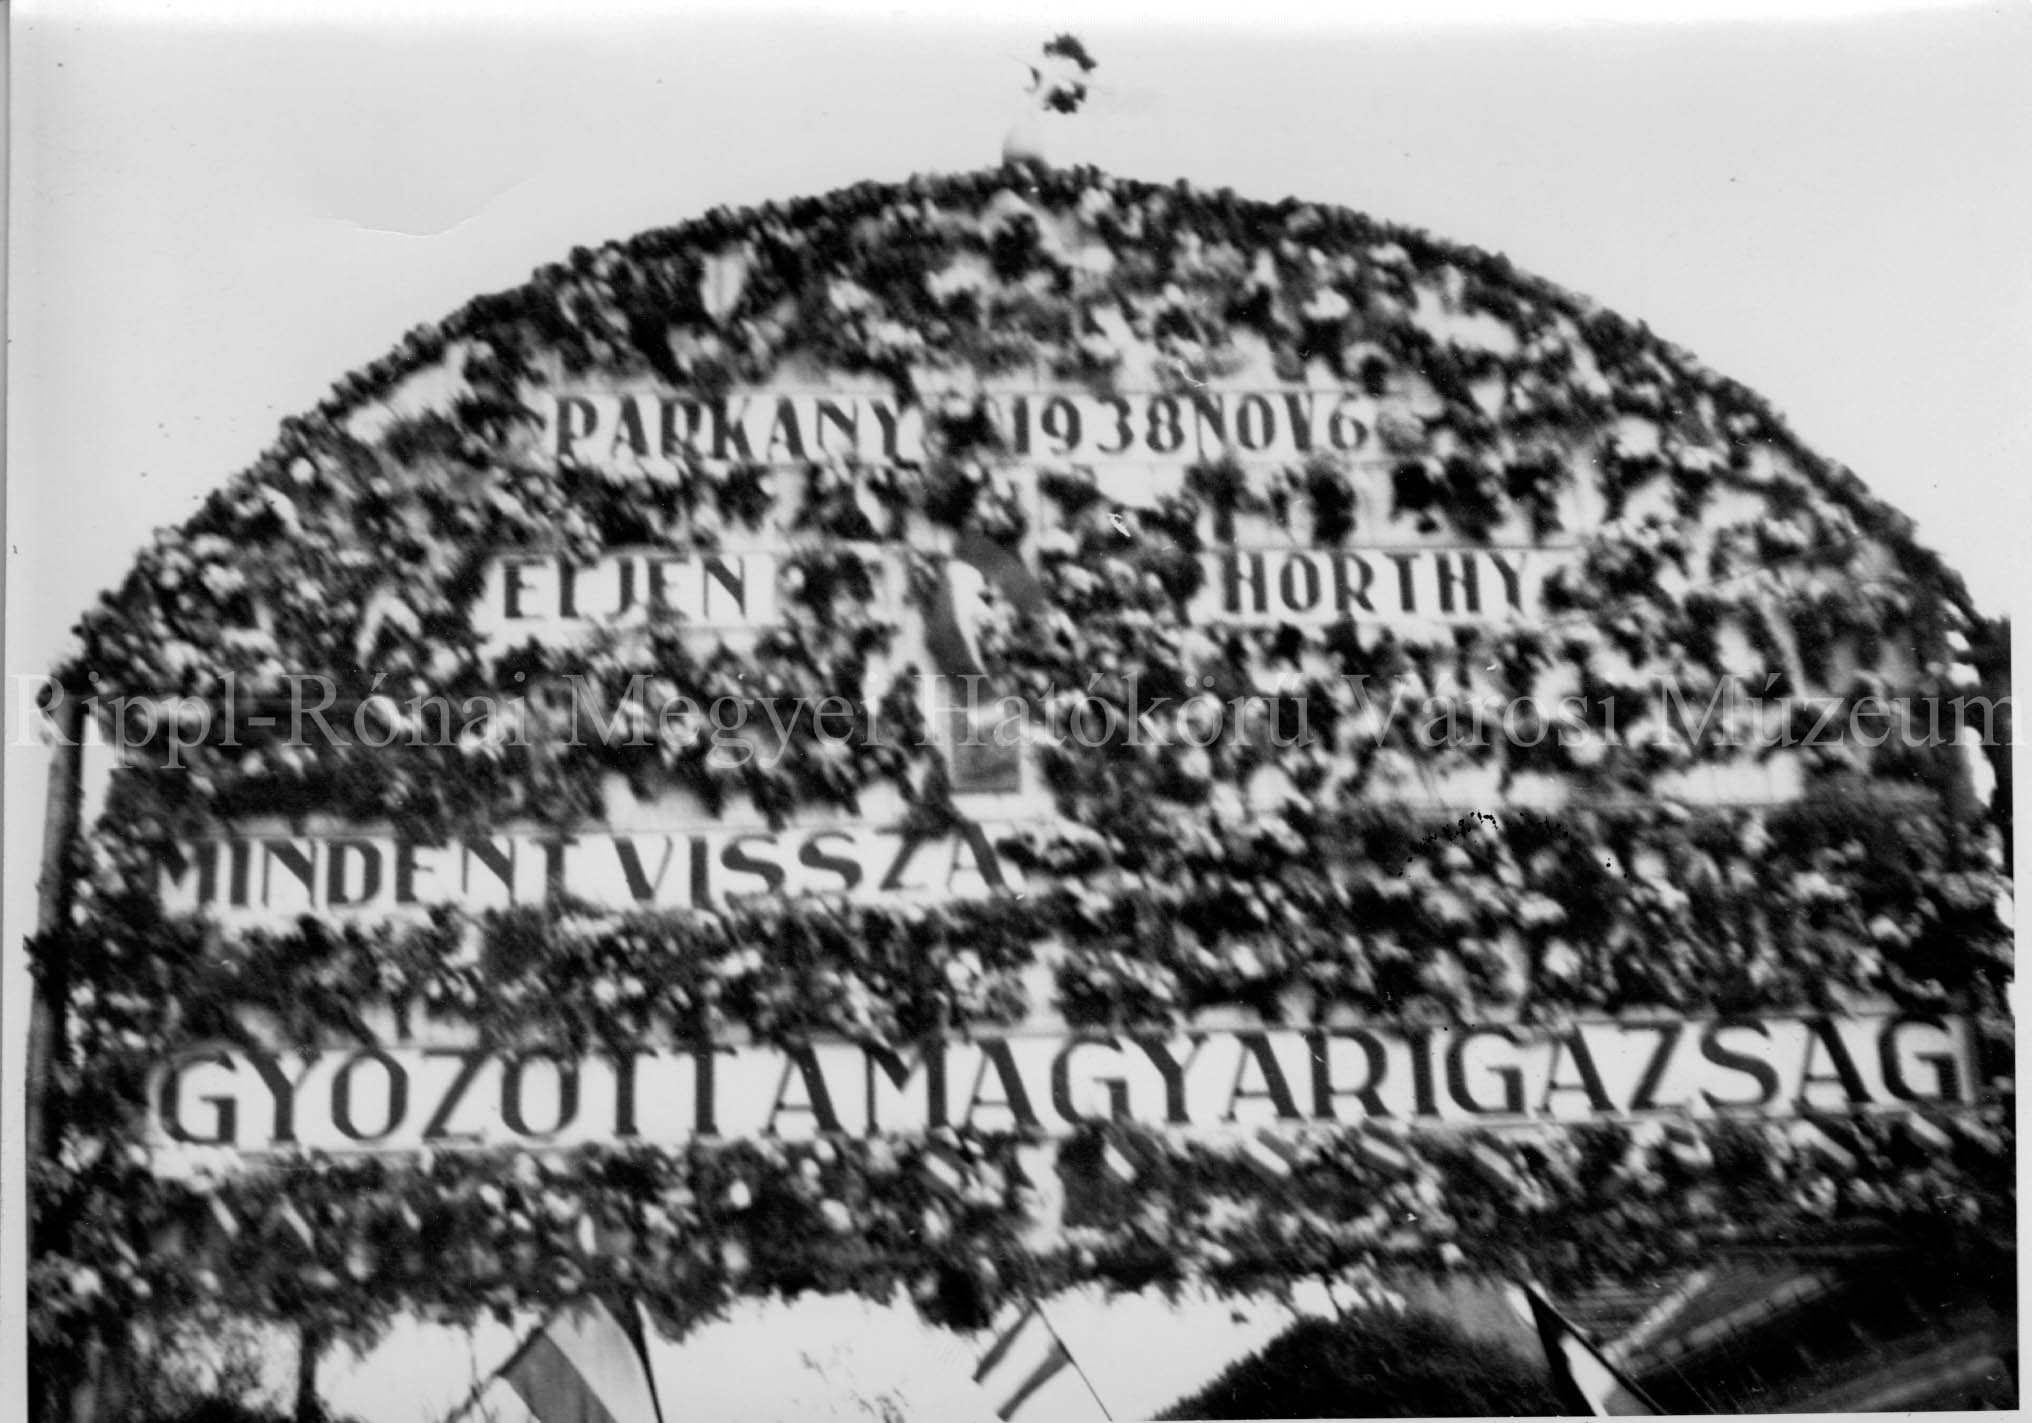 A Párkányi bevonulás tiszteletére felállított diadalkapu. Felirata: Párkány 1938. november 6. Éljen Horthy Mindent vissza, Győzött a magyar igaz (Rippl-Rónai Múzeum CC BY-NC-SA)